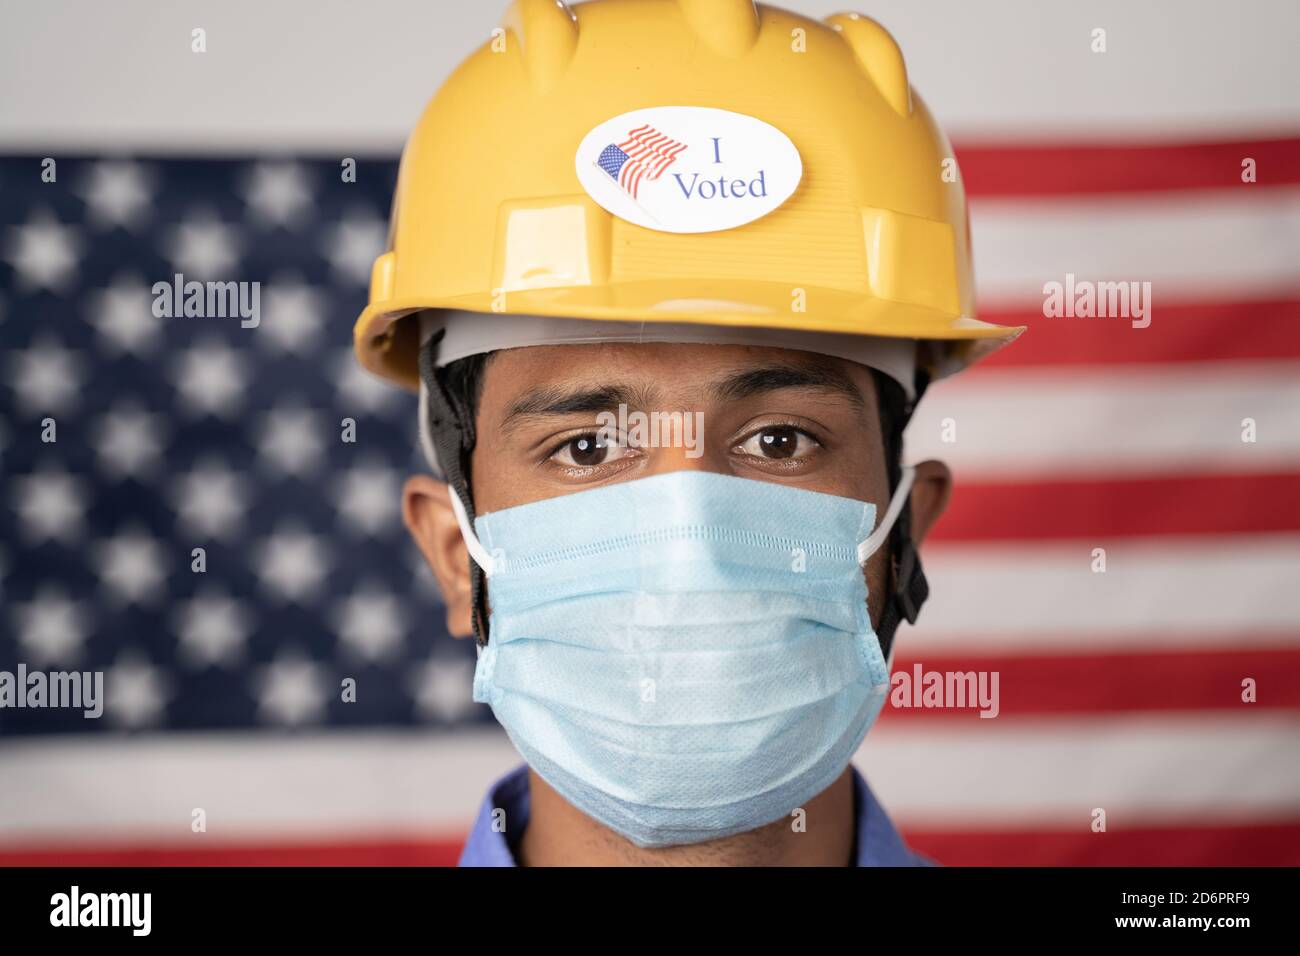 Coup de tête, j'ai voté autocollant sur le casque de travailleur avec le drapeau américain comme arrière-plan - concept des élections et vote aux États-Unis. Banque D'Images